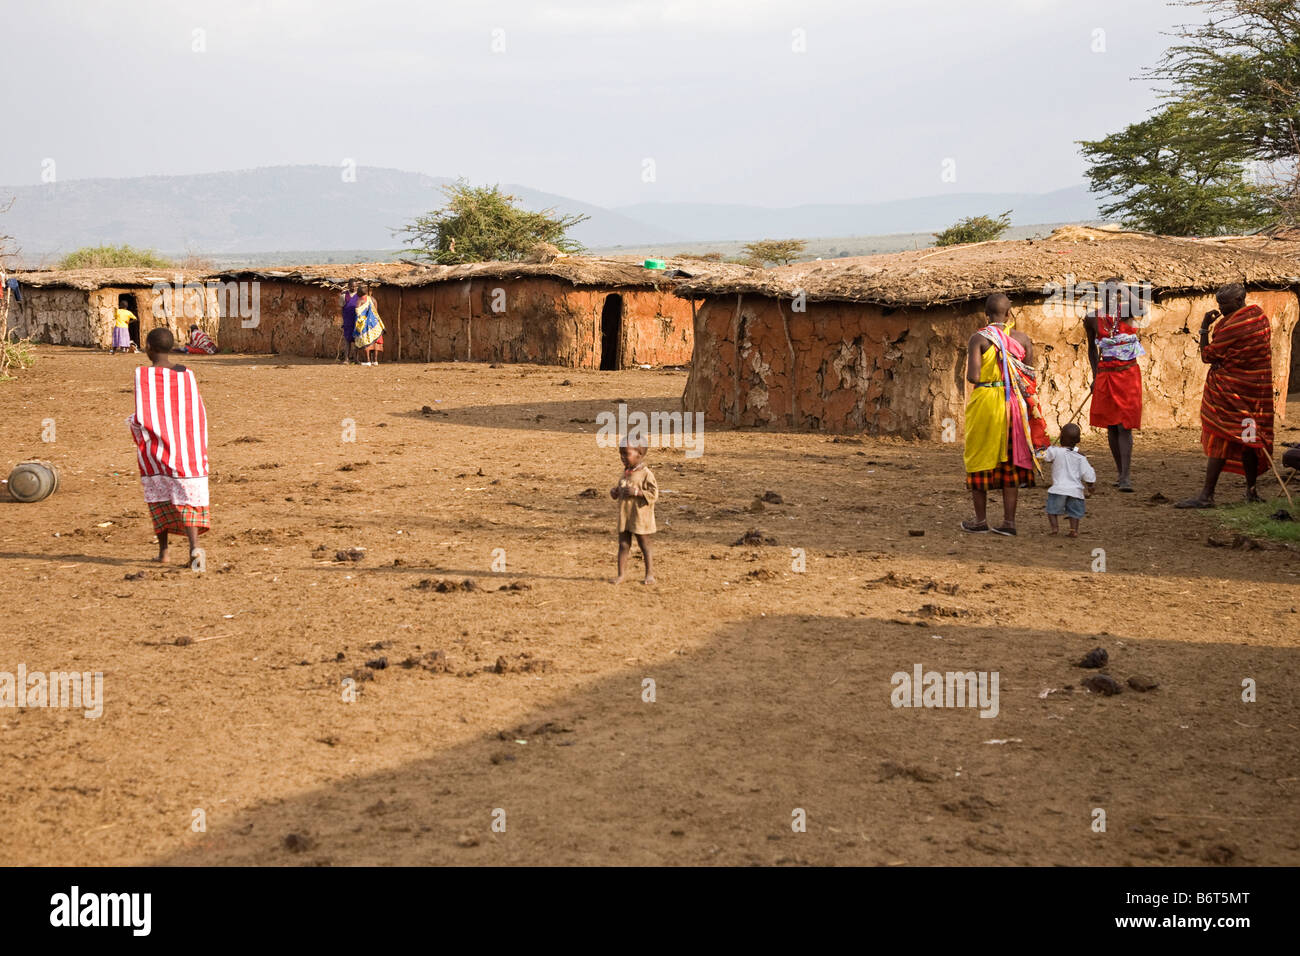 Composé de village près de parc Masai Mara Kenya Afrique Banque D'Images